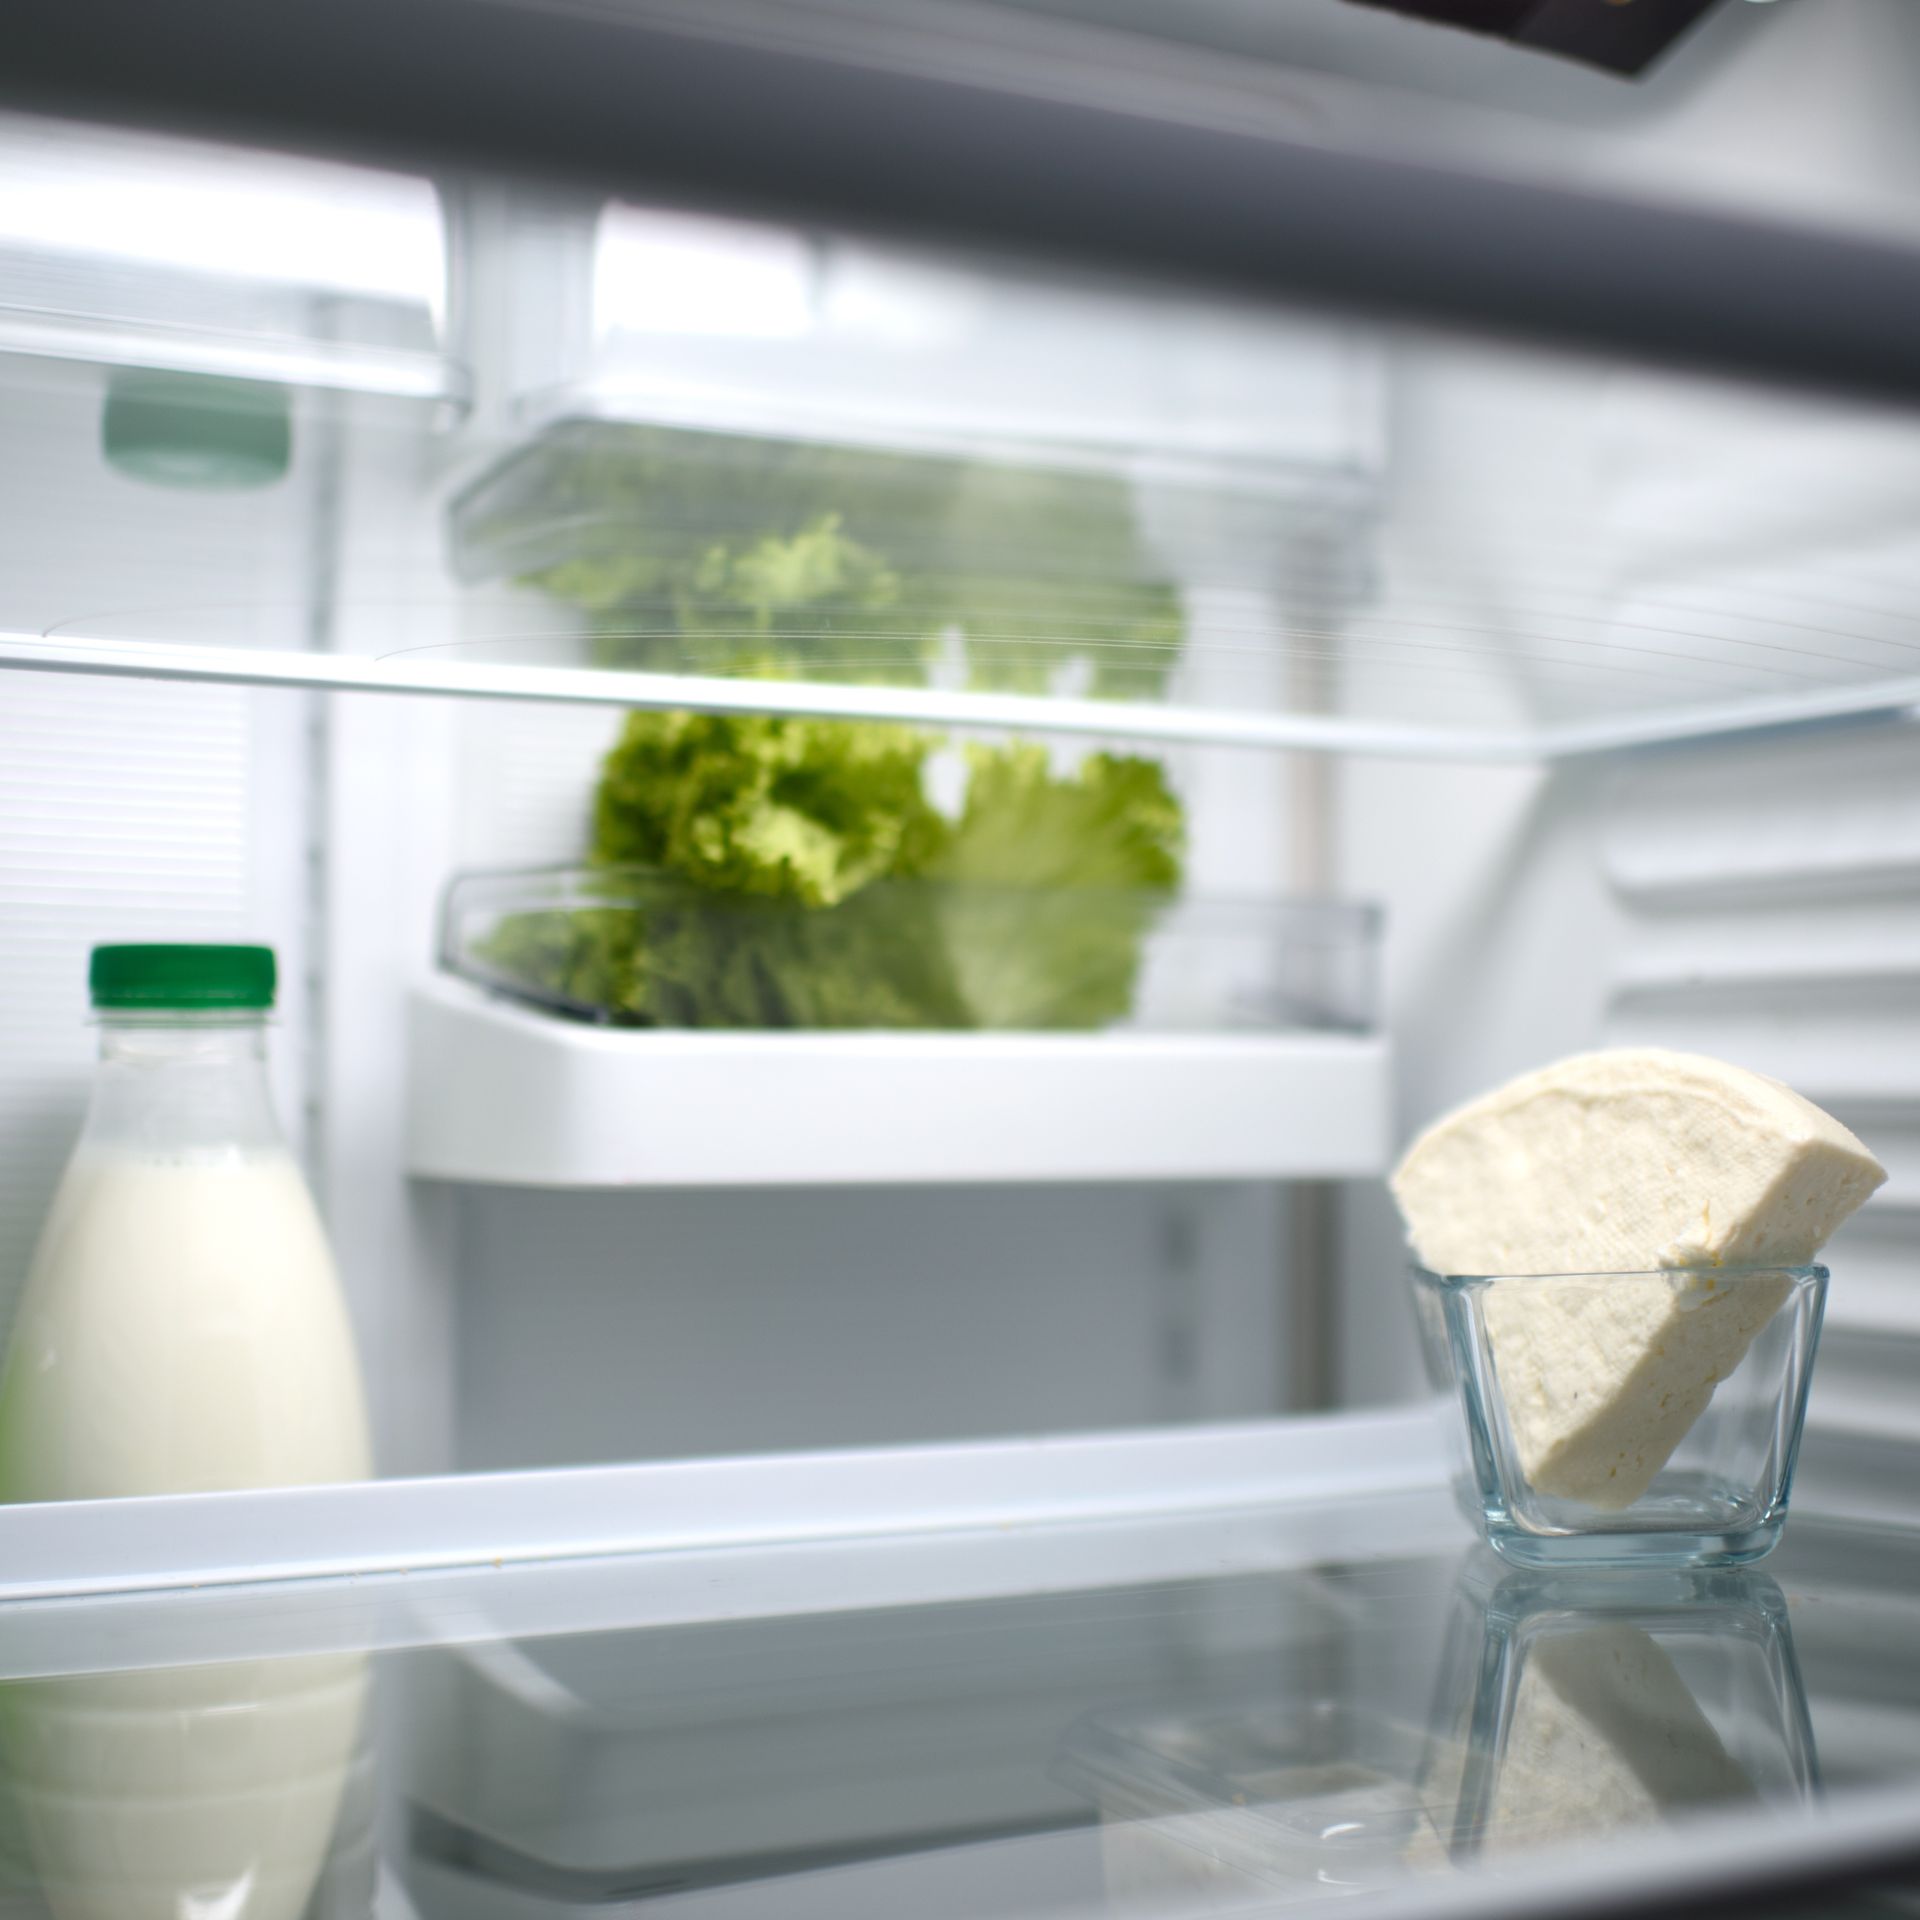 Comment ranger son frigo pour conserver au mieux les aliments ? 